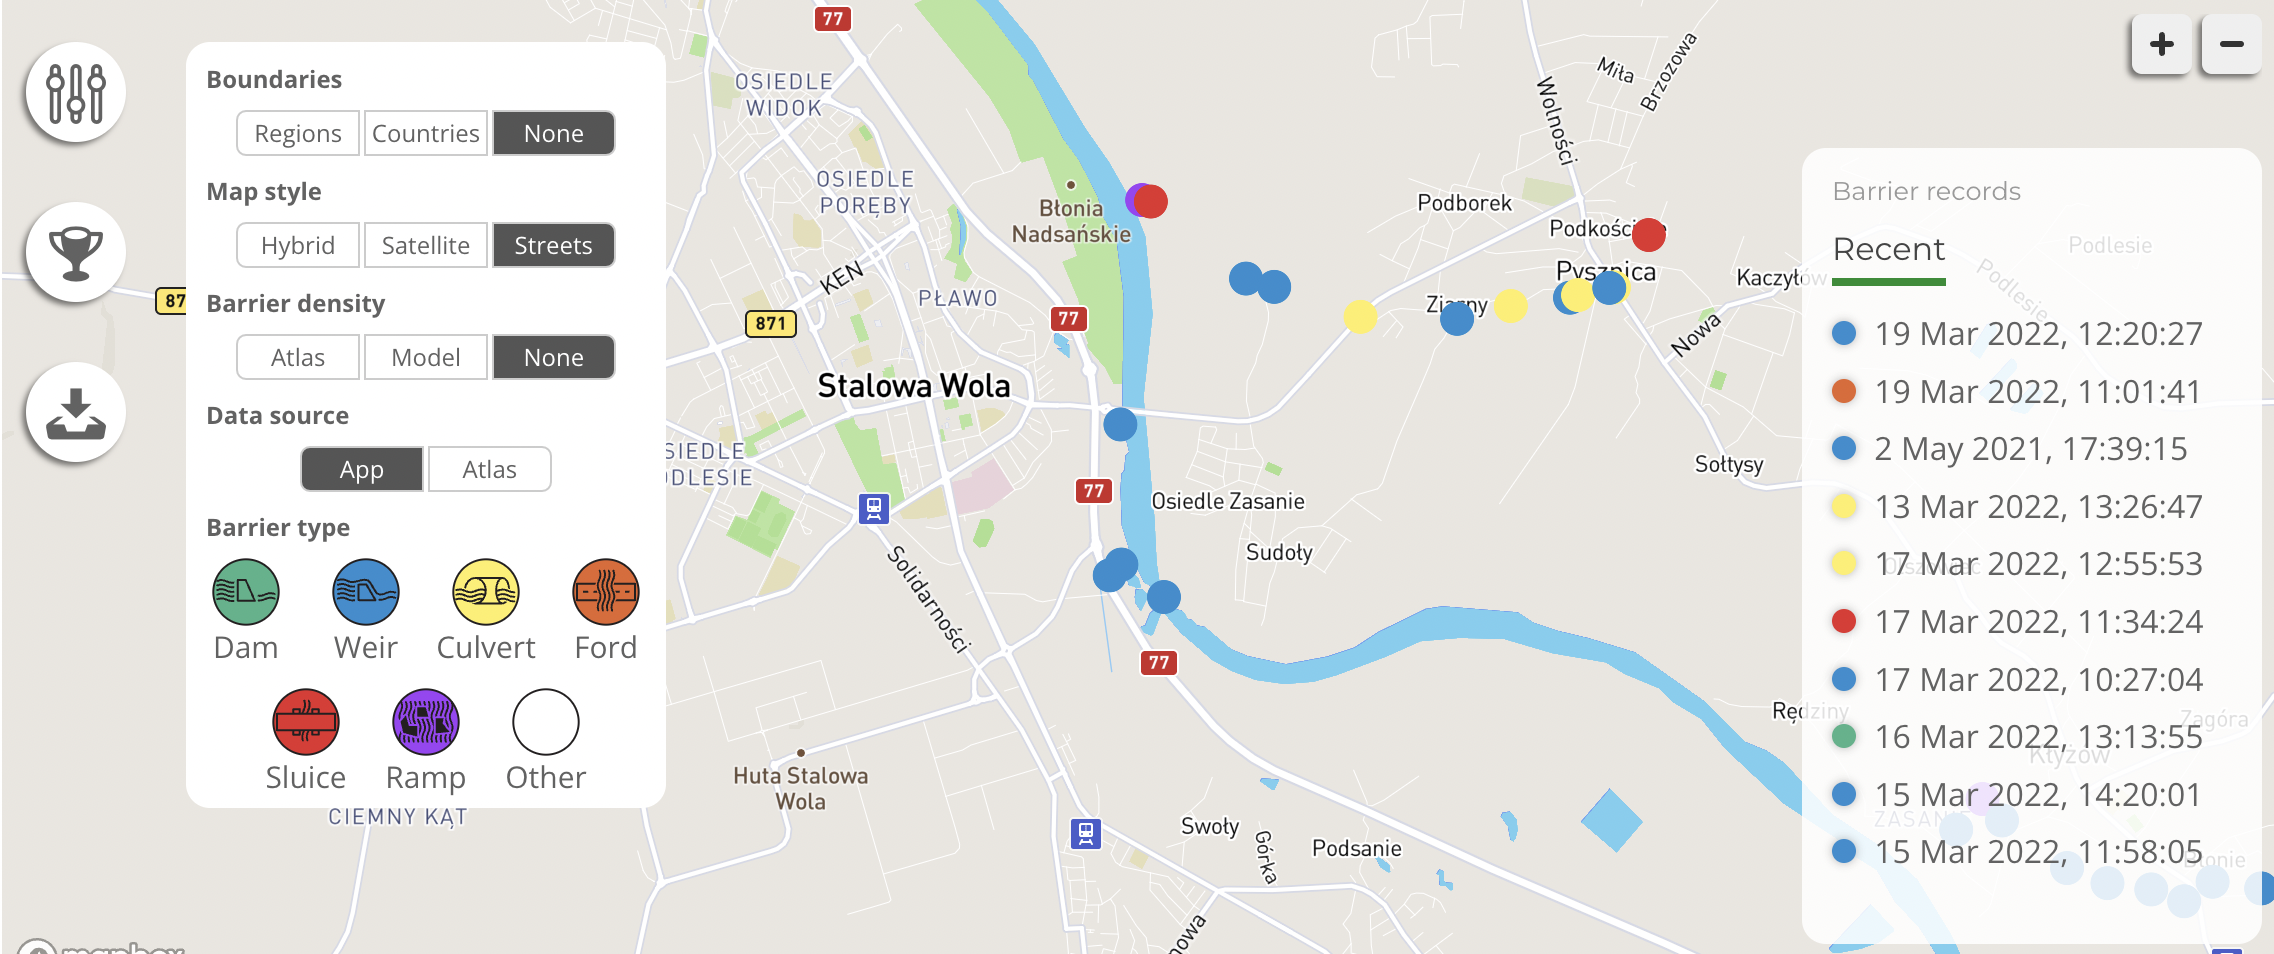 W poszukiwaniu sztucznych barier w Barcówce / Barrier tracking in the Barcówka river